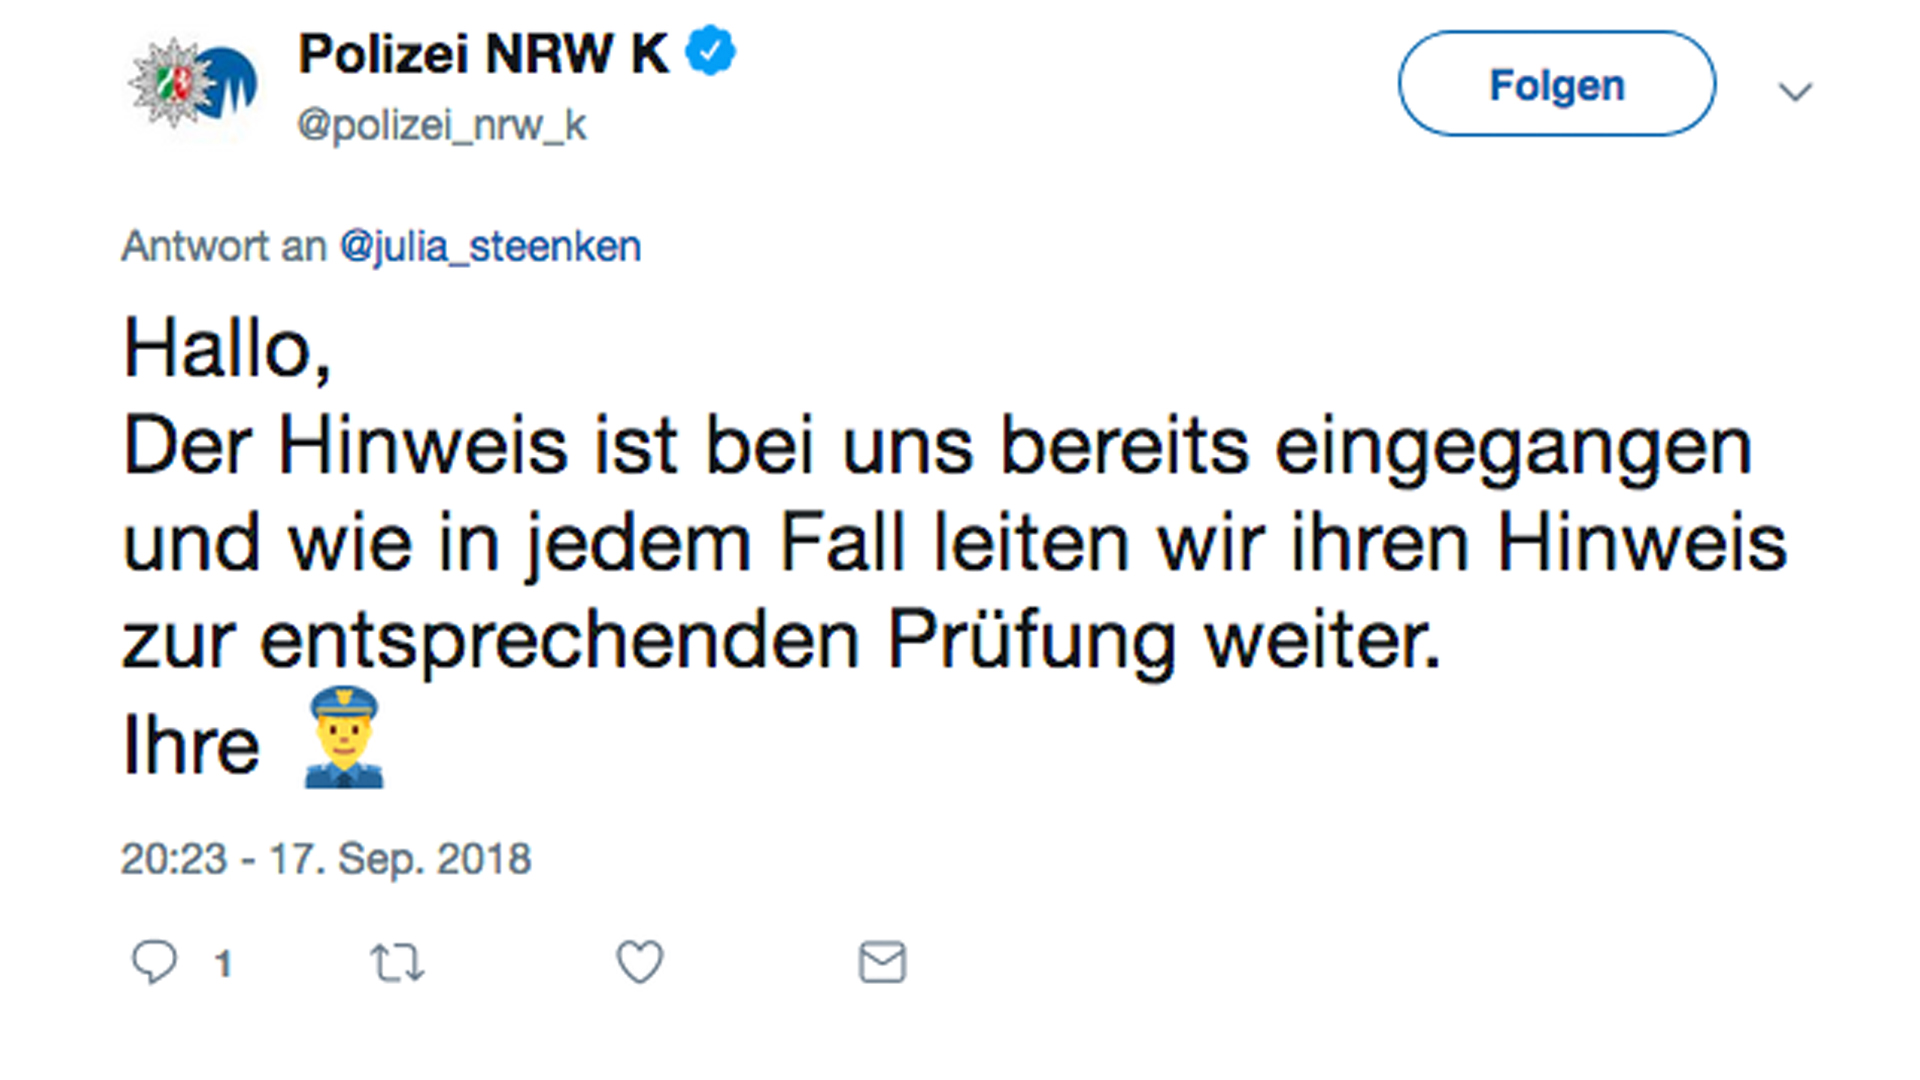 Tweet der Polizei Nordrhein-Westfalen als Antwort auf einen Hinweis auf das Plakat, der via Twitter kam